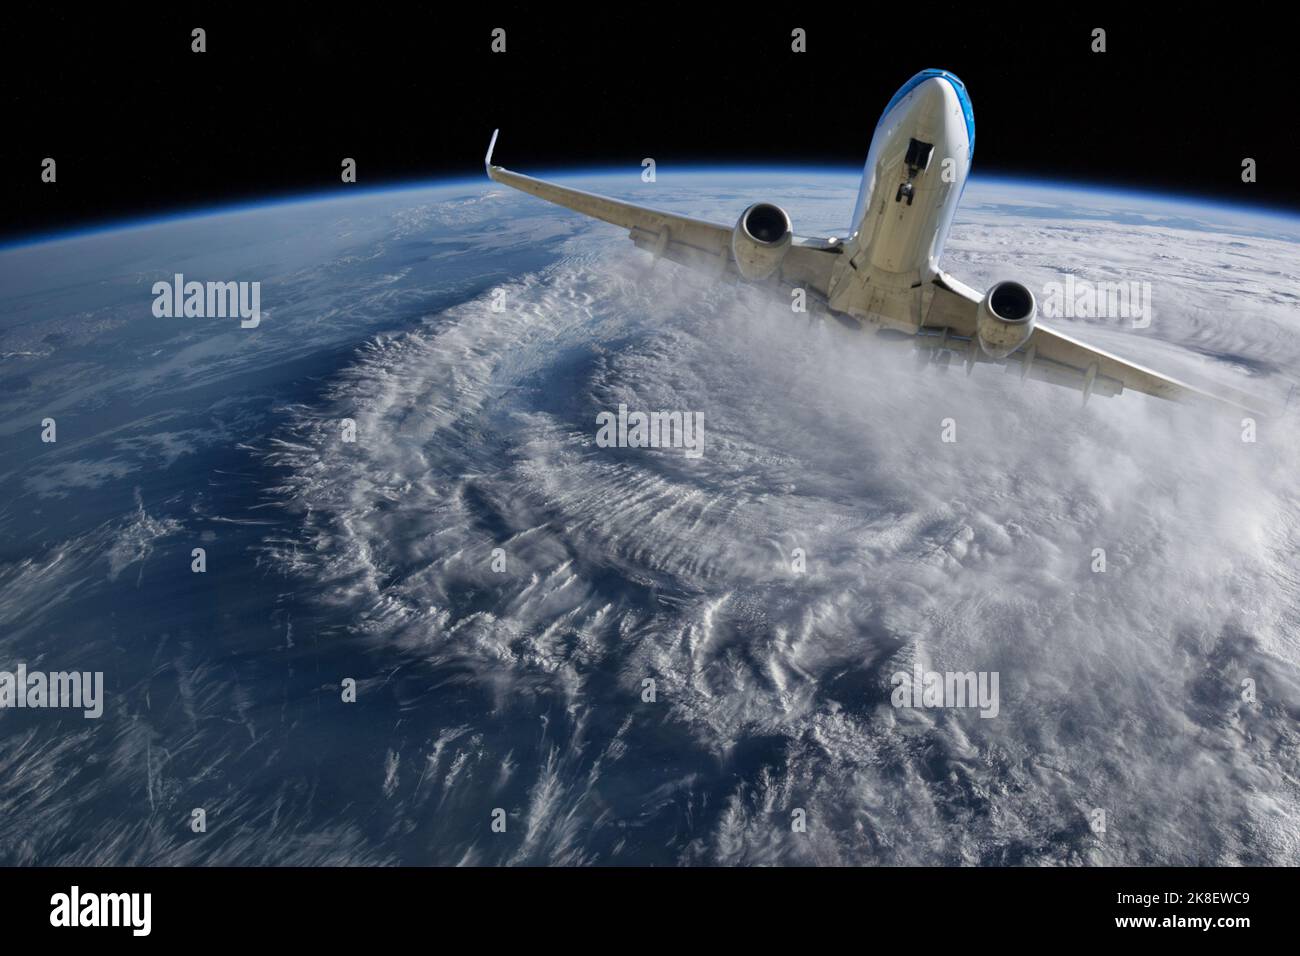 Fin du concept de métaphore mondiale. Évadez-vous du monde avion voler dans l'espace compagnies aériennes. 'Éléments de cette image fournis par la NASA' Banque D'Images